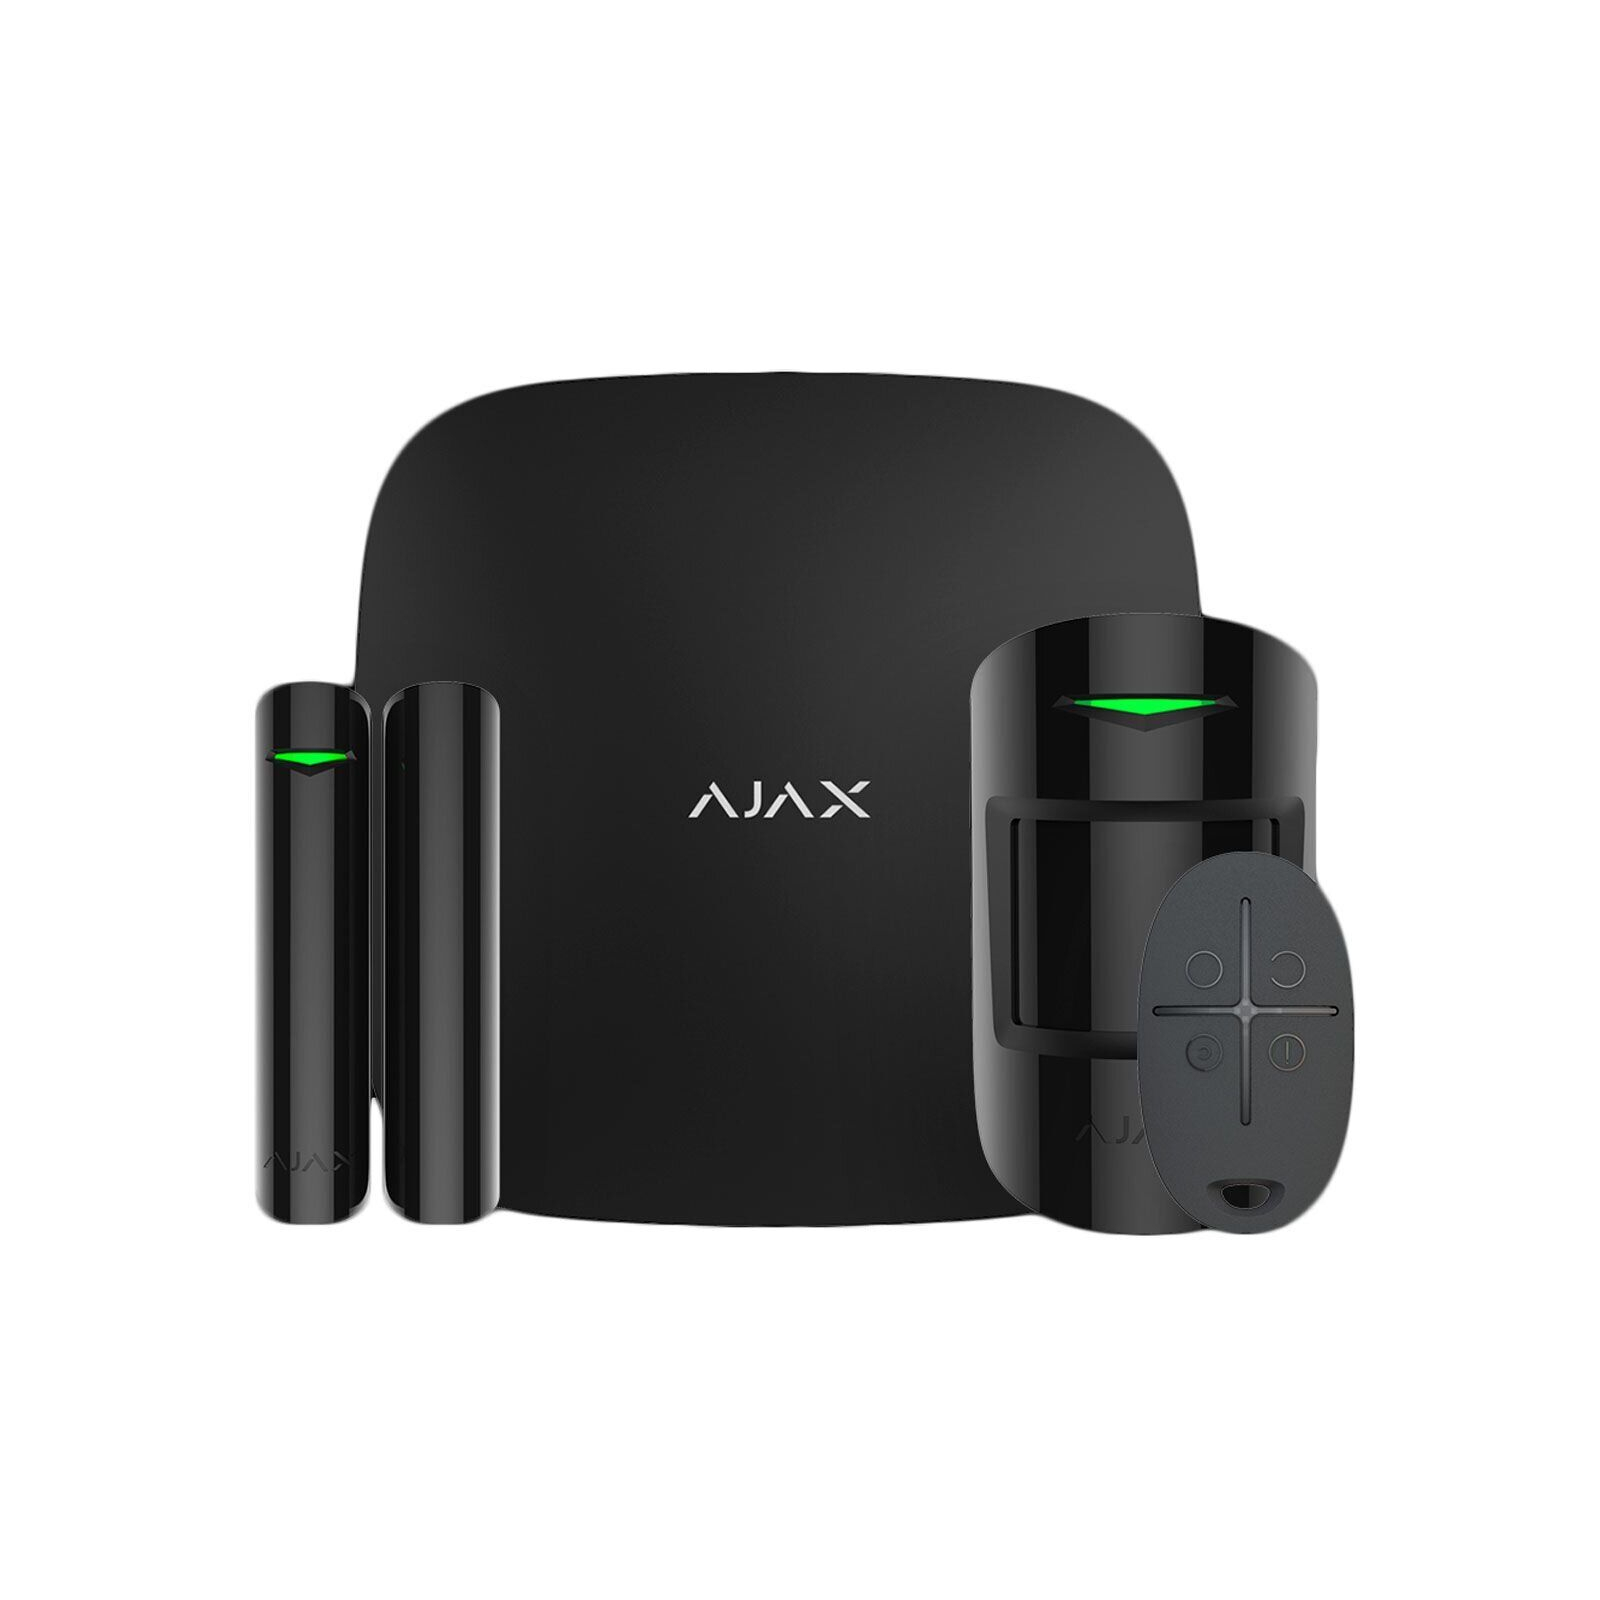 Комплект охранной сигнализации Ajax StarterKit2 black